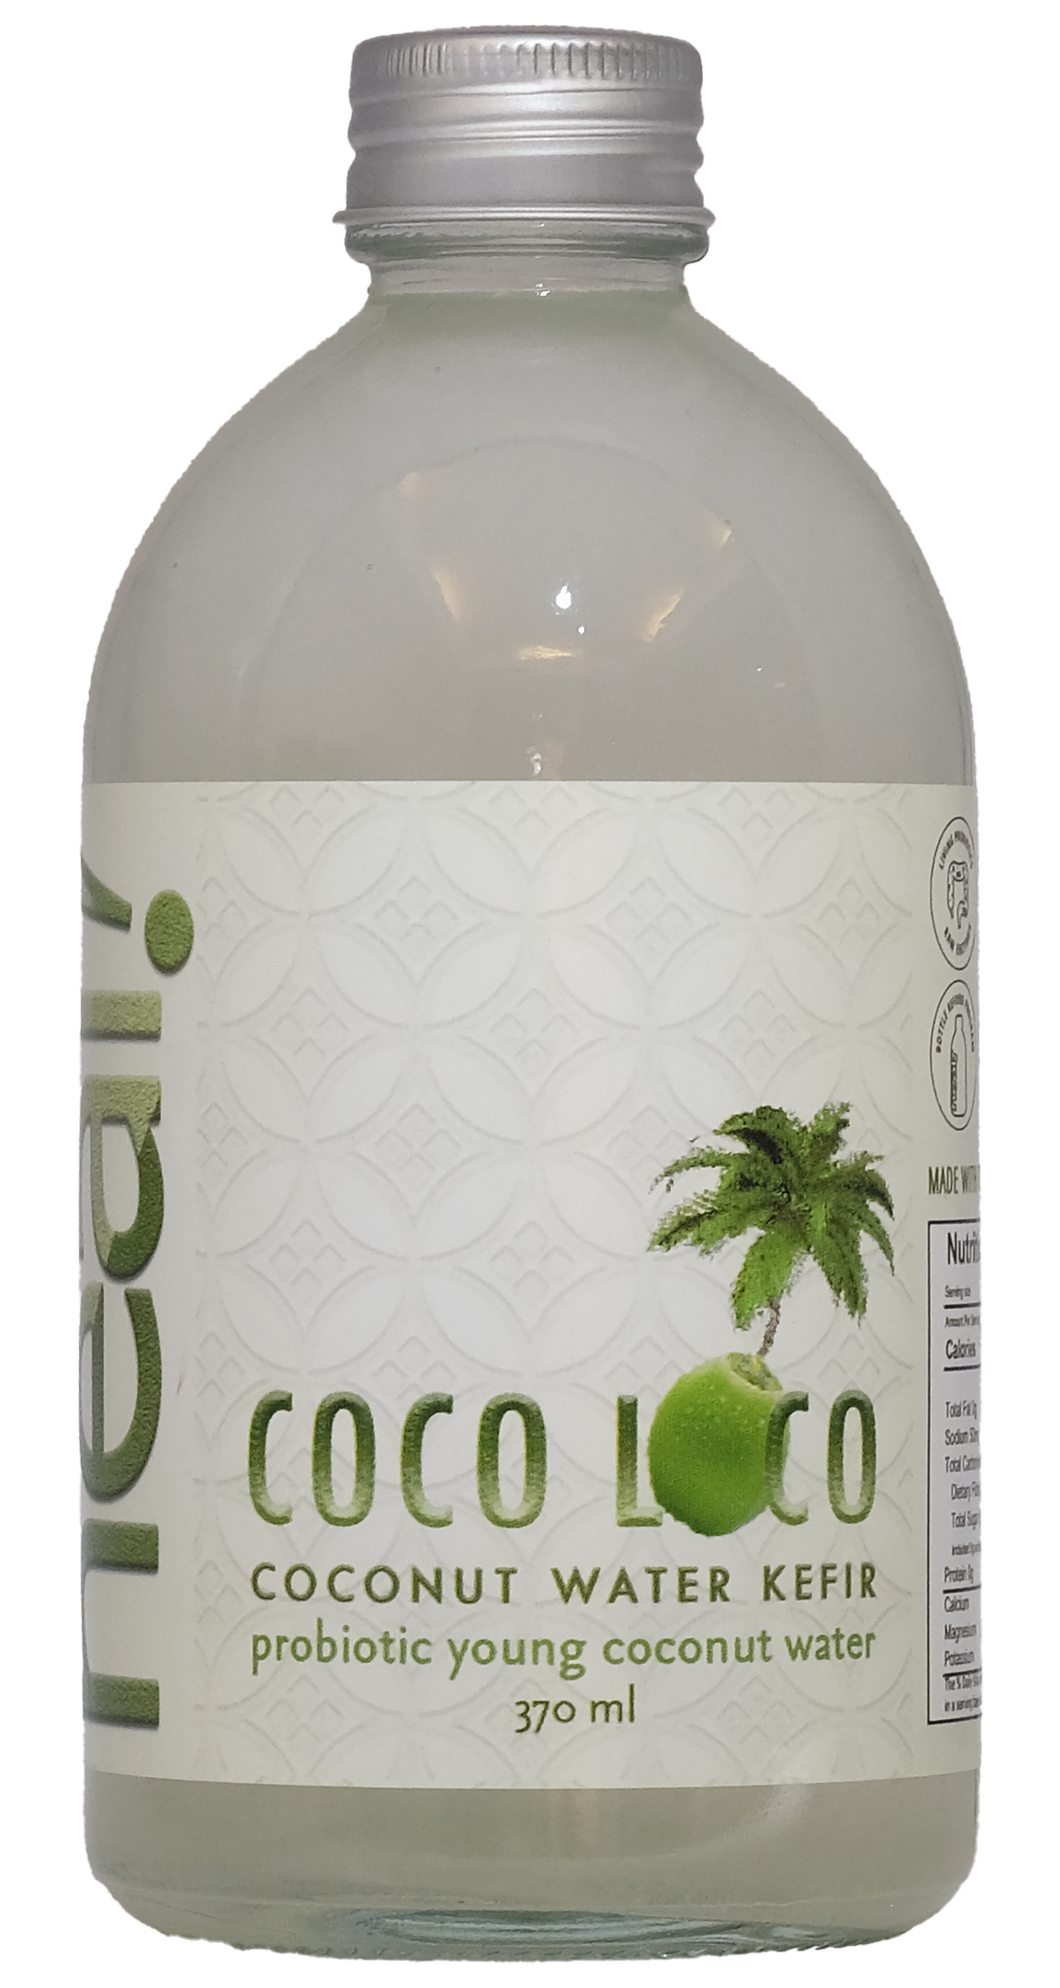 Coco Loco Coconut Water Kefir